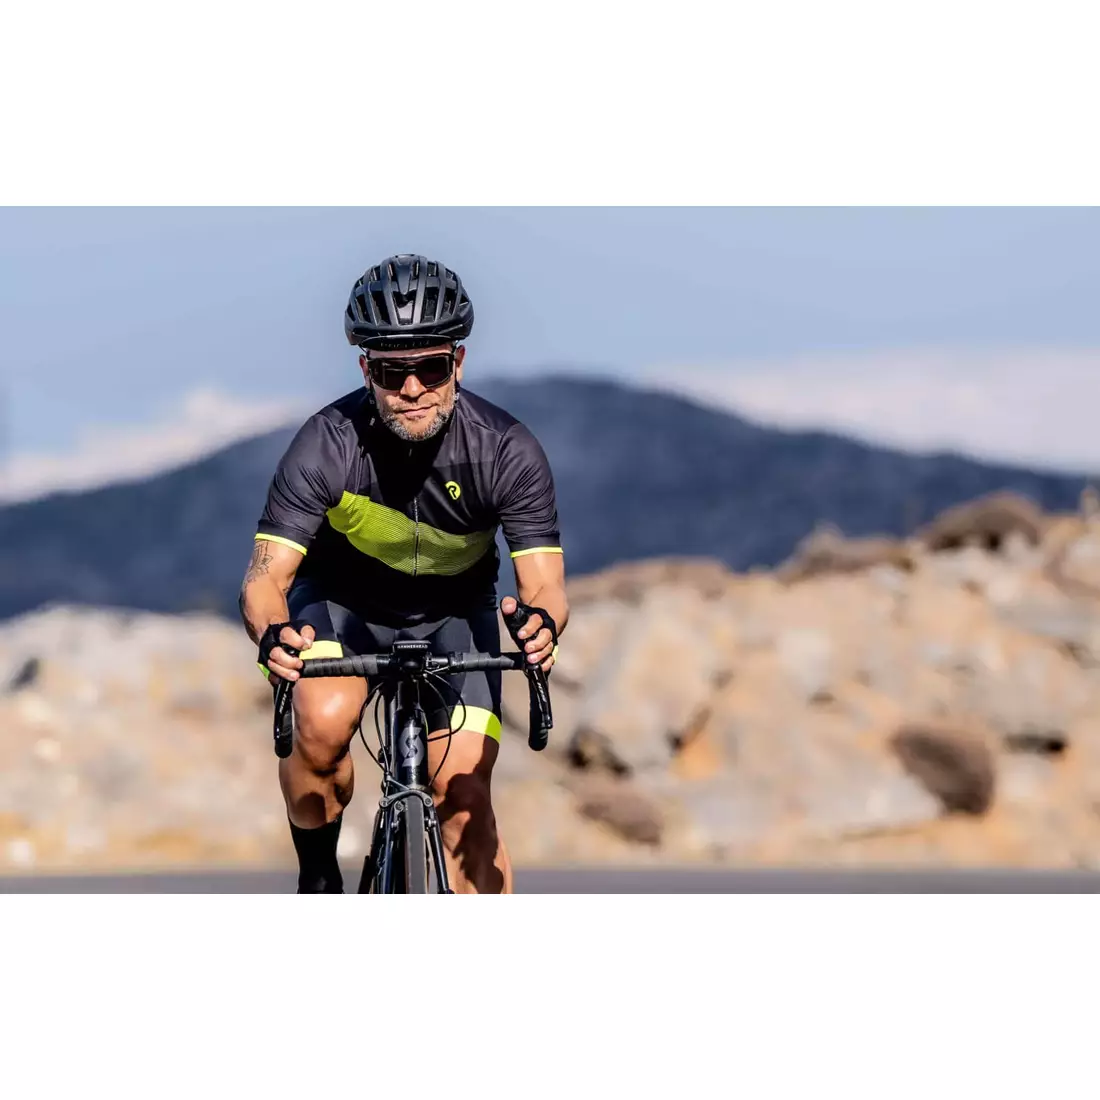 Rogelli GROOVE pánský cyklistický dres, černý fluor